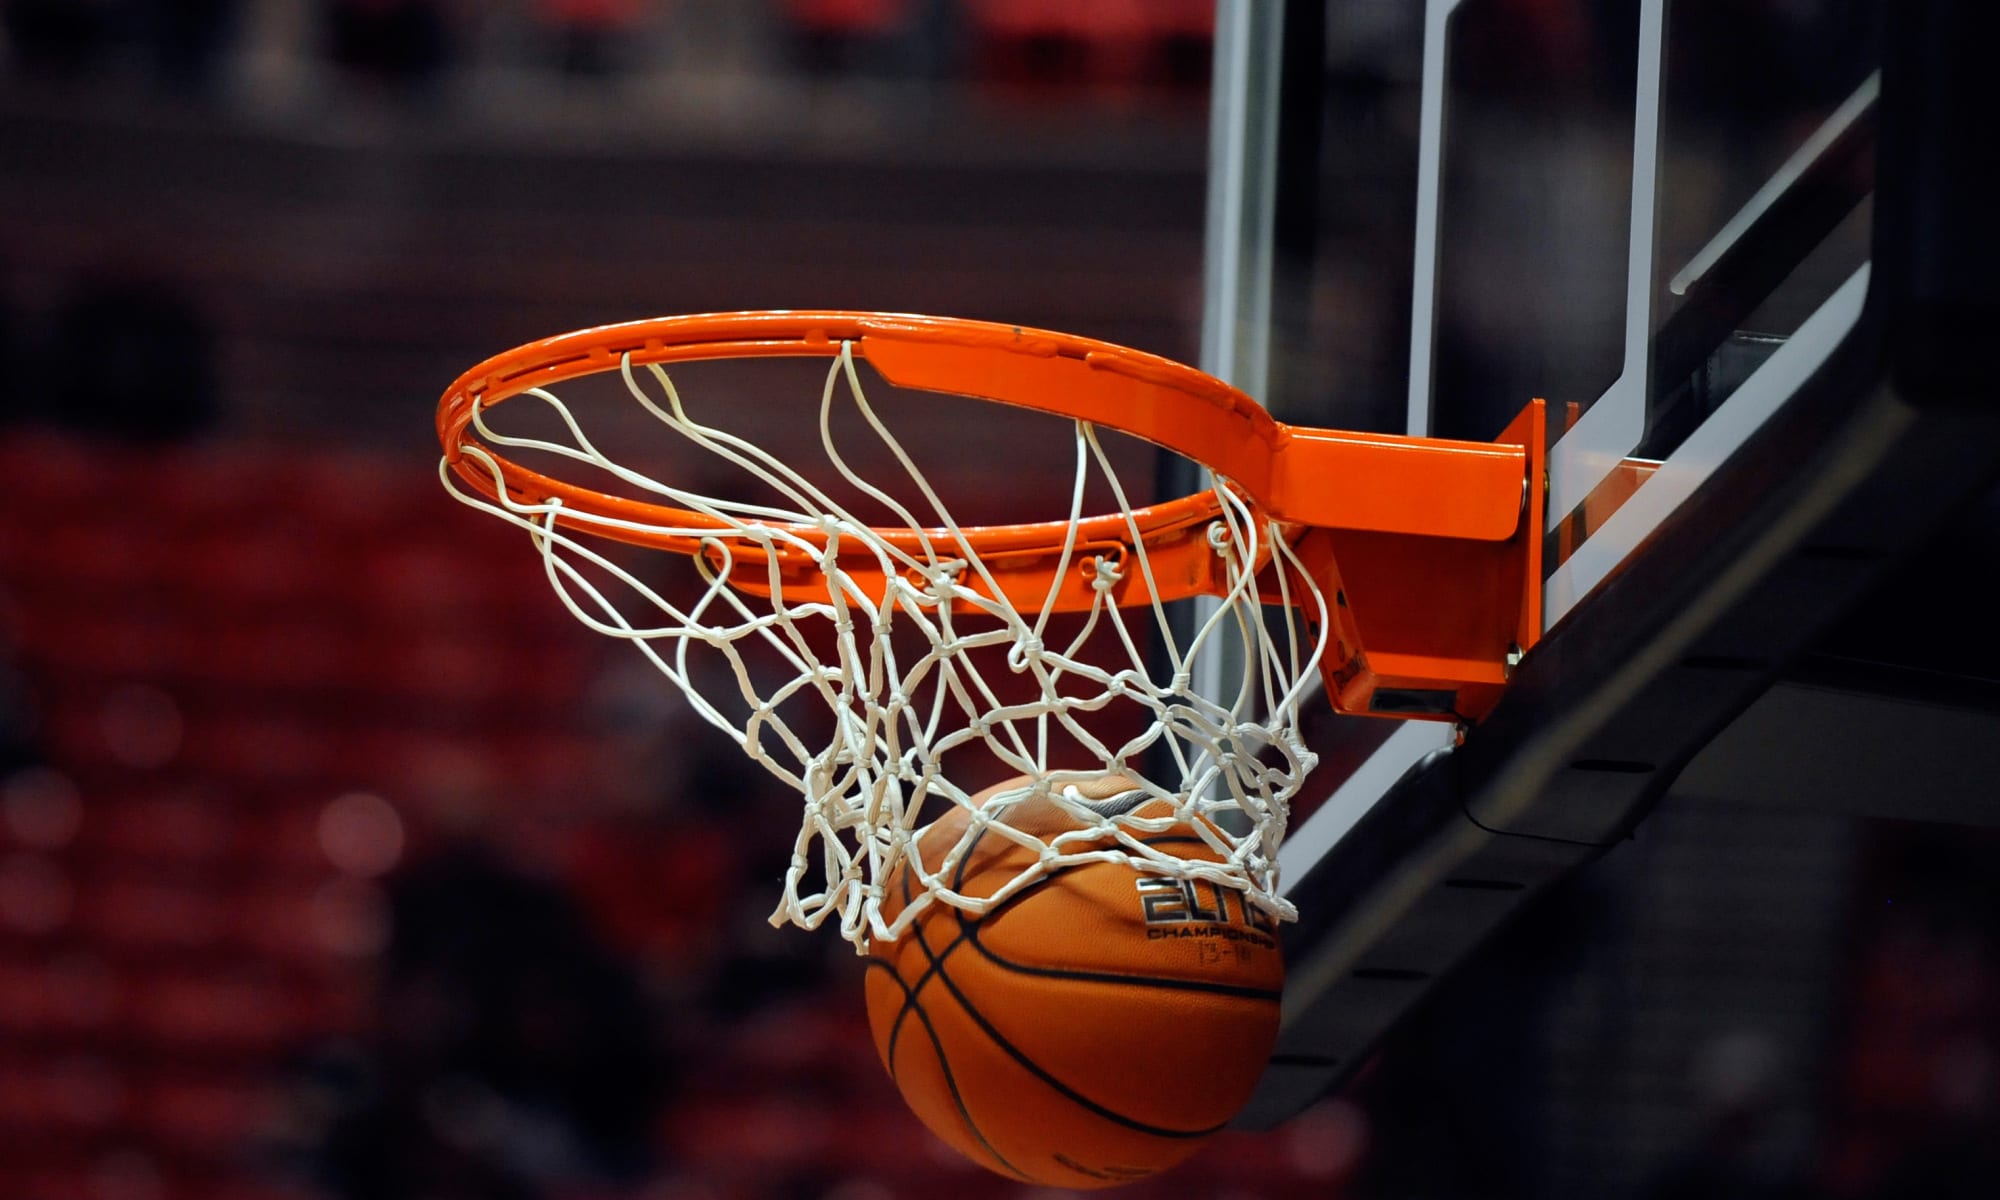  بطولة كرة السلة: برنامج مقابلات الجولة الثالثة ايابا